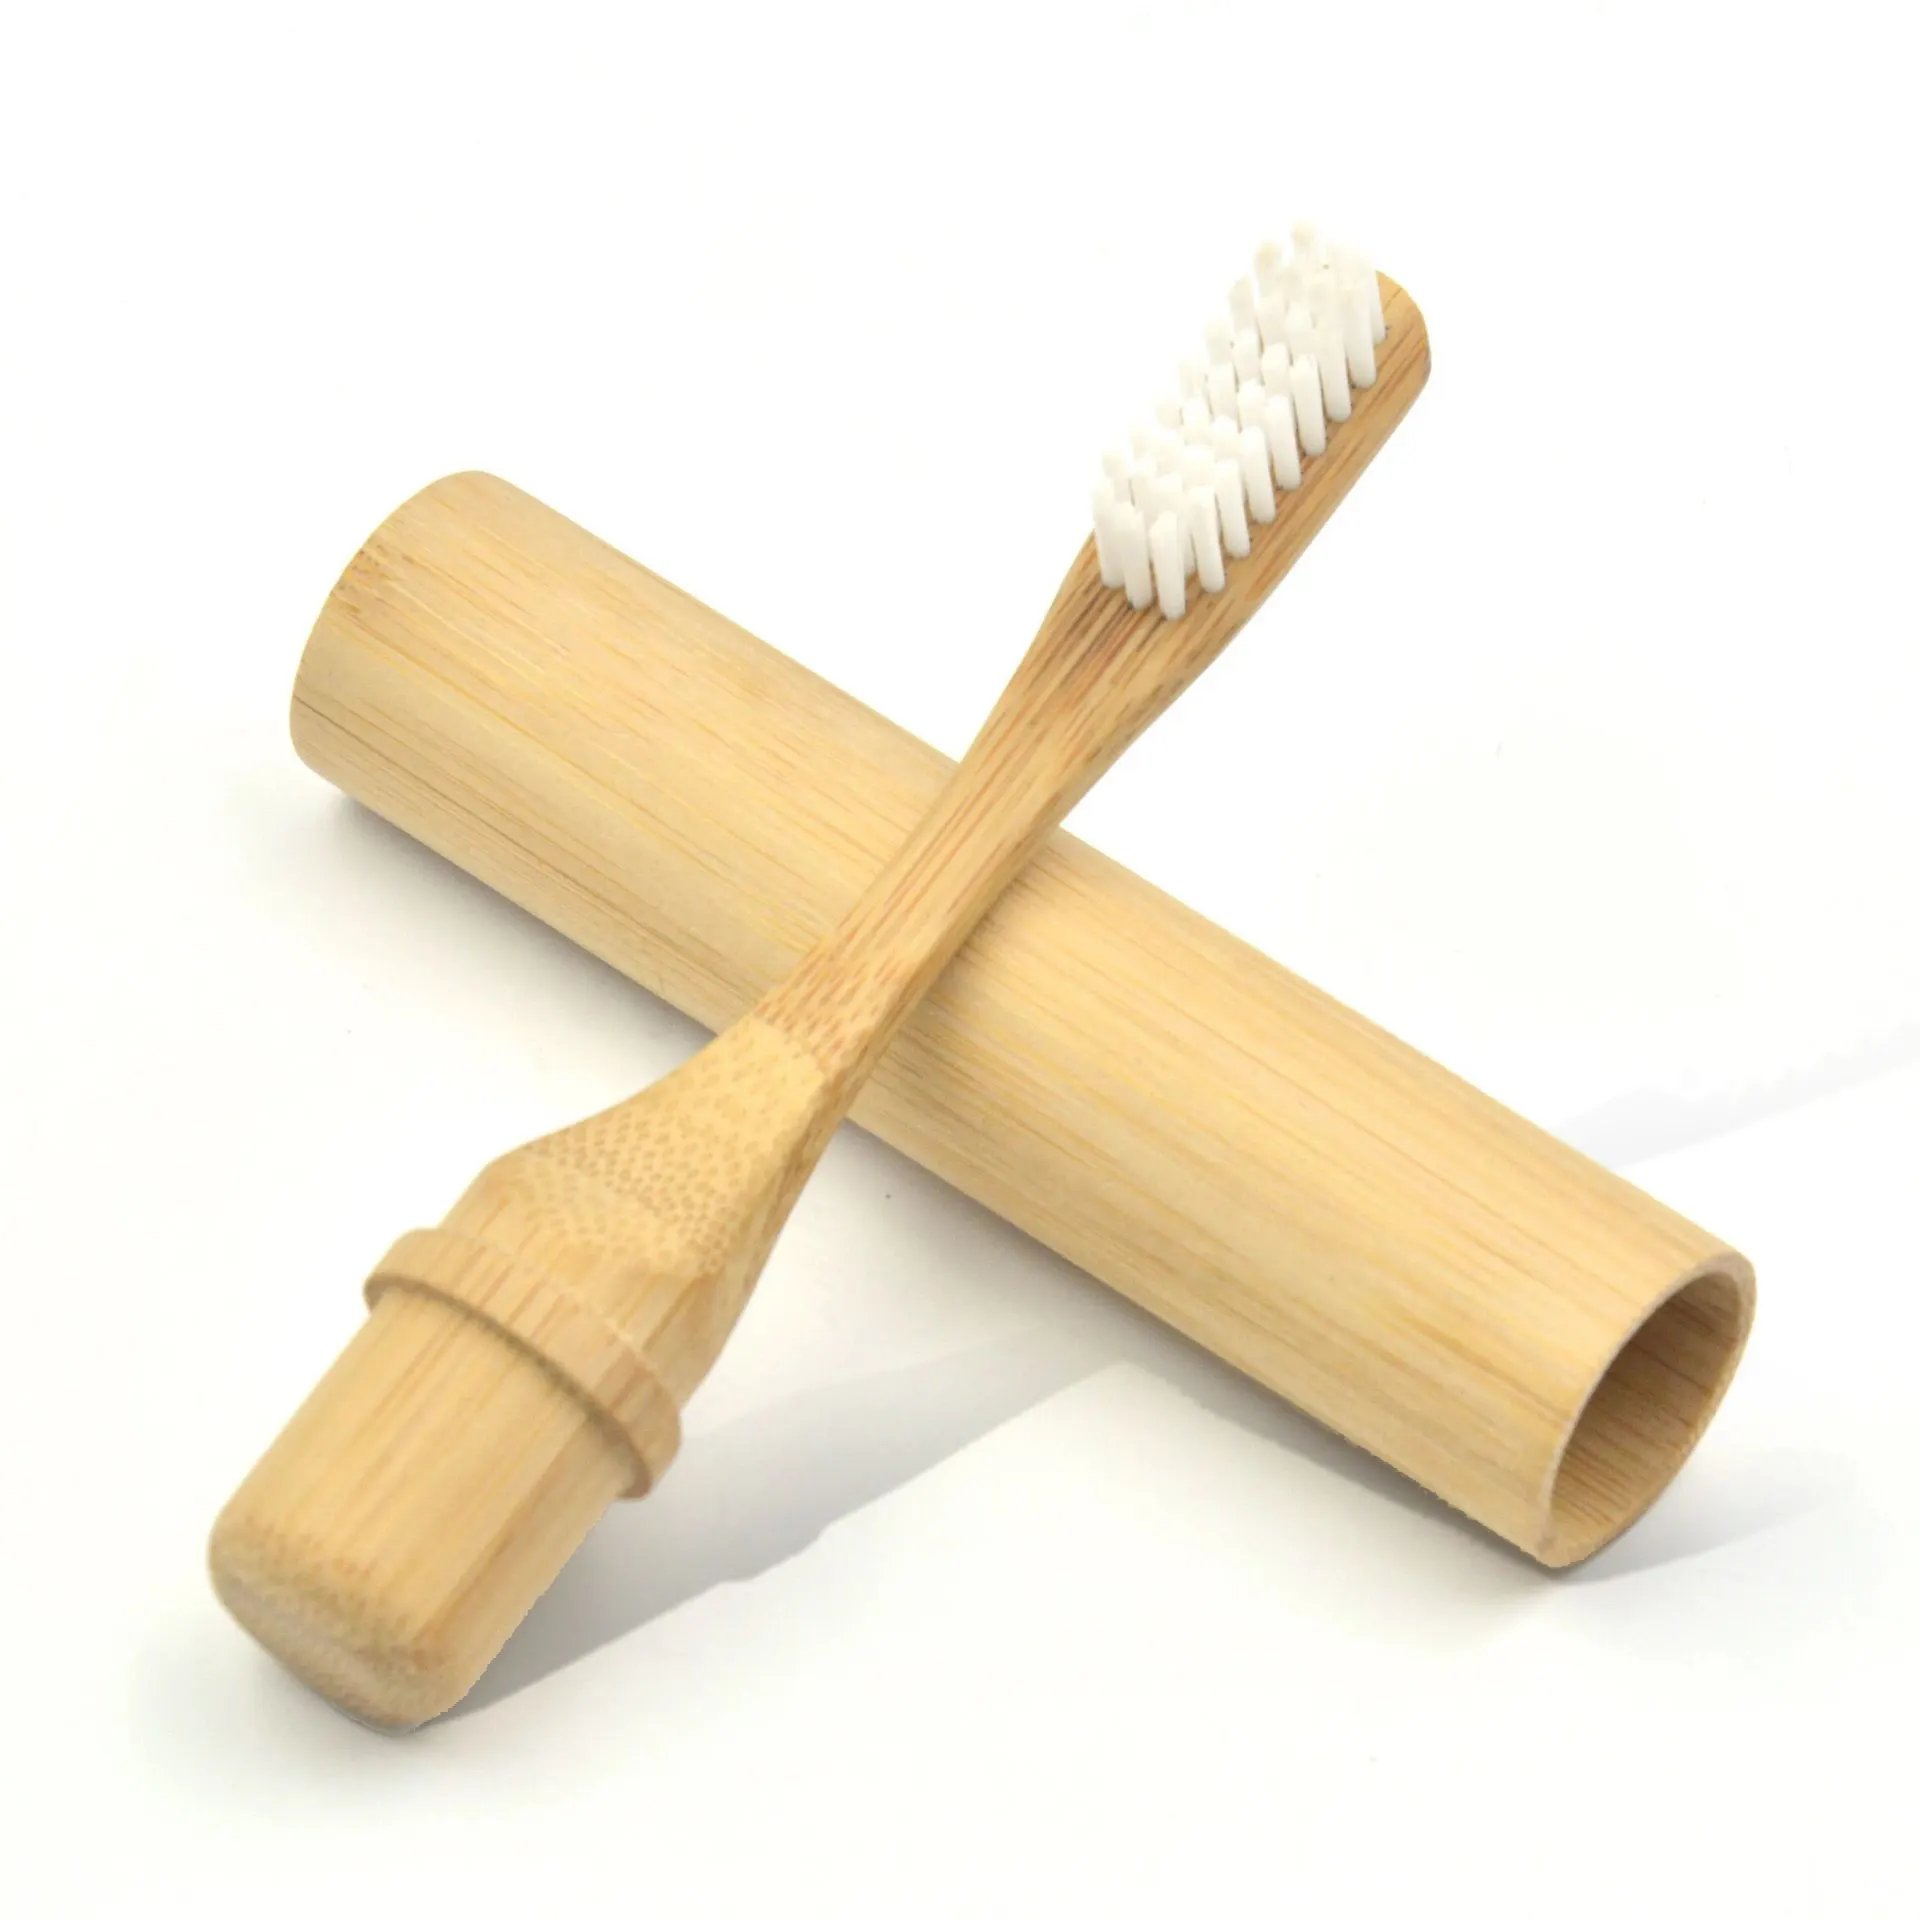 ชุดผลิตภัณฑ์แปรงสีฟันแบบนุ่มทำจากไม้ไผ่สำหรับเด็กผู้ใหญ่100% สั่งทำได้